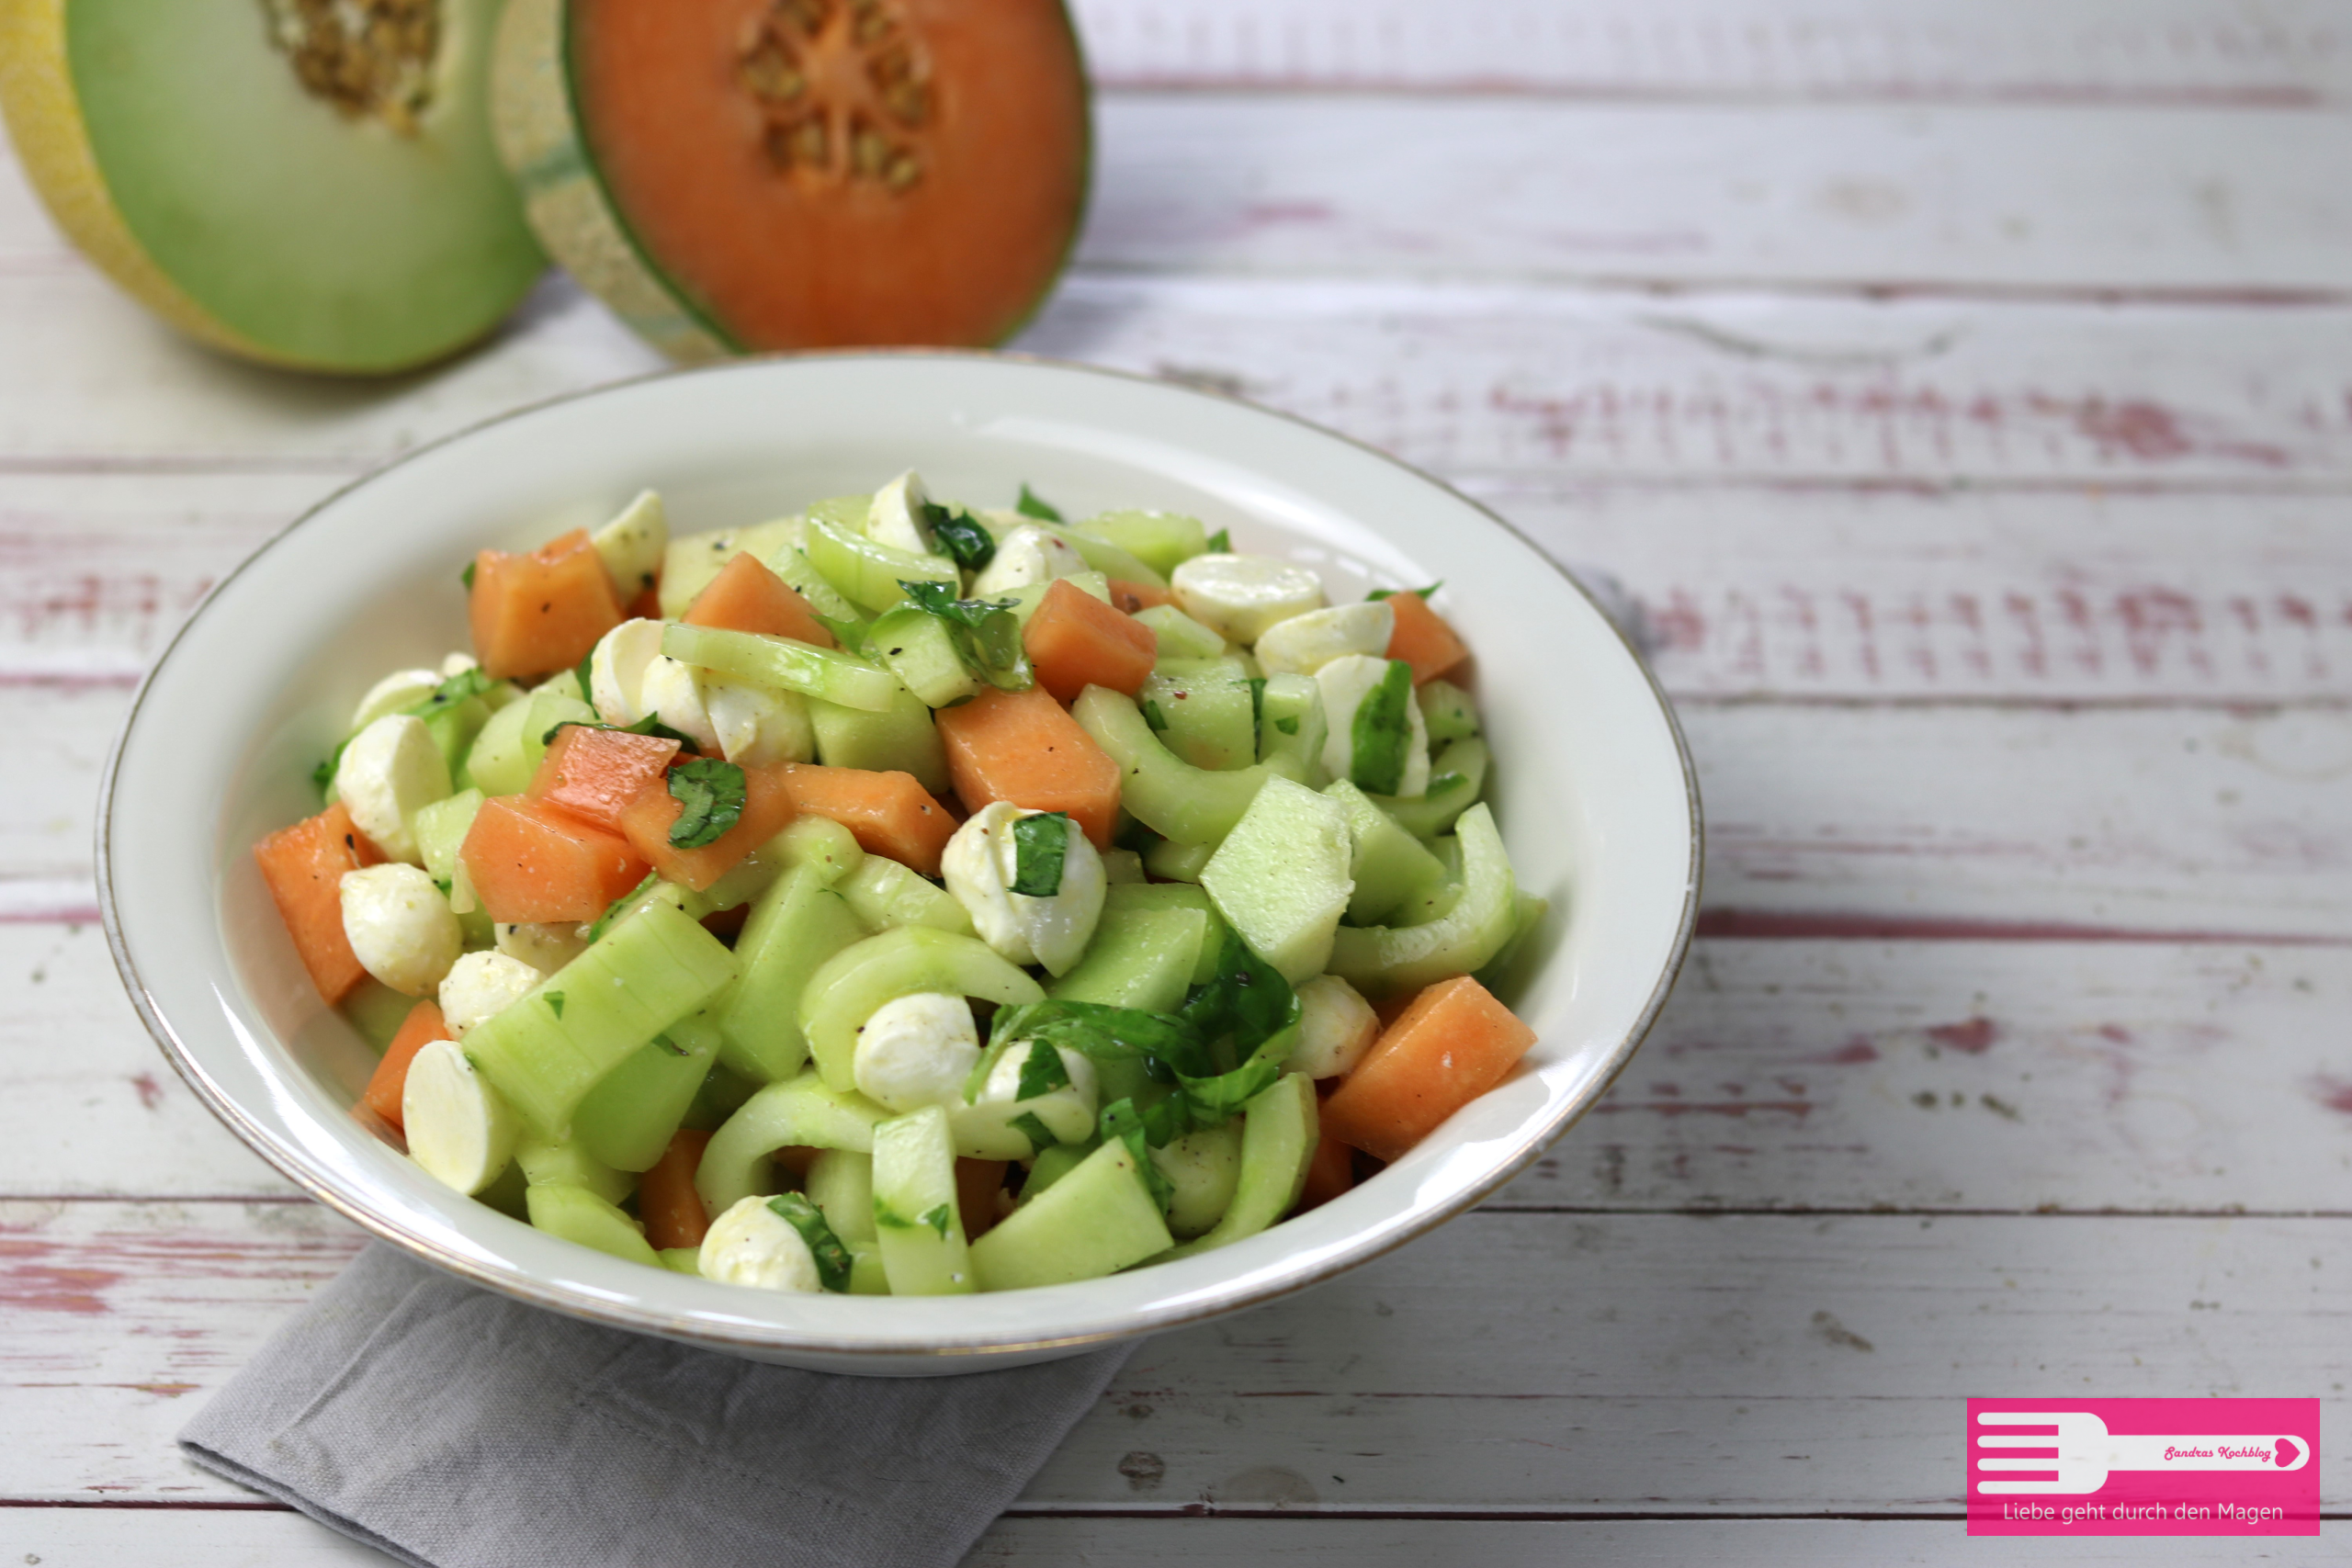 Melonen Gurken Salat mit Mozzarella und Basilkum